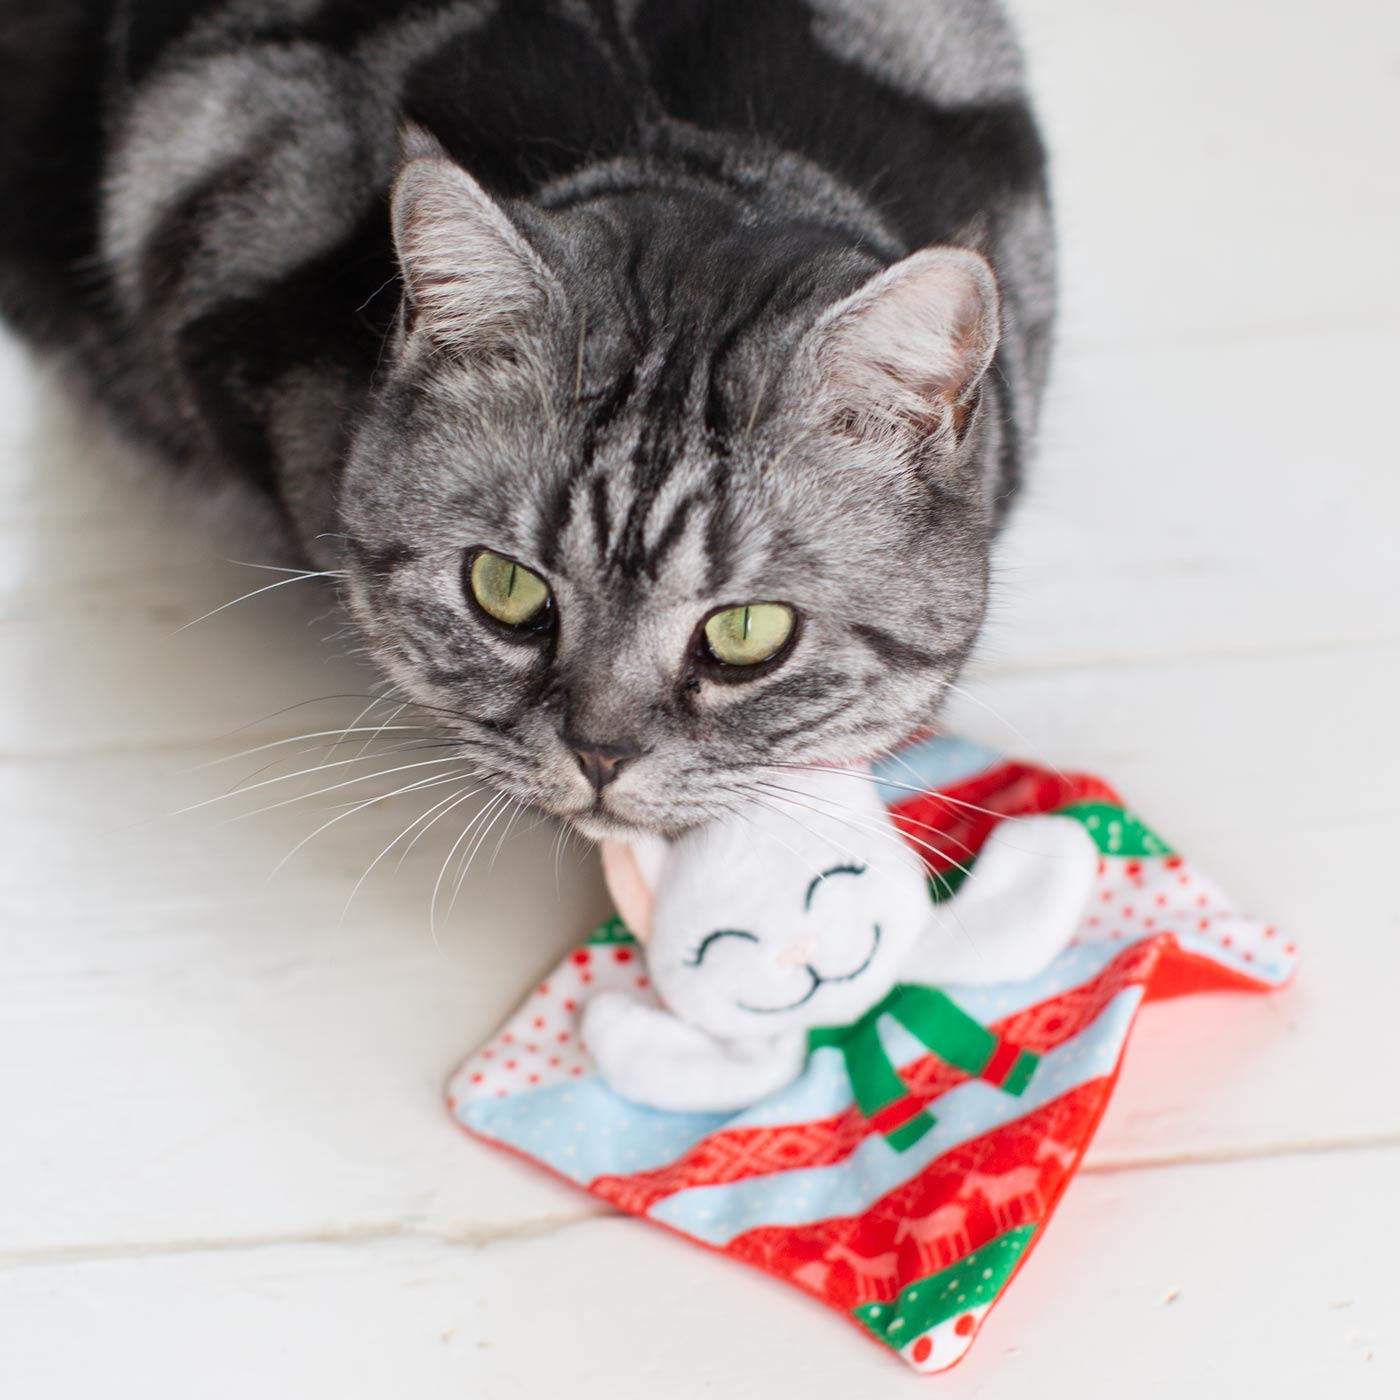 KONG holiday crackles santa kitty with cat looking at camera